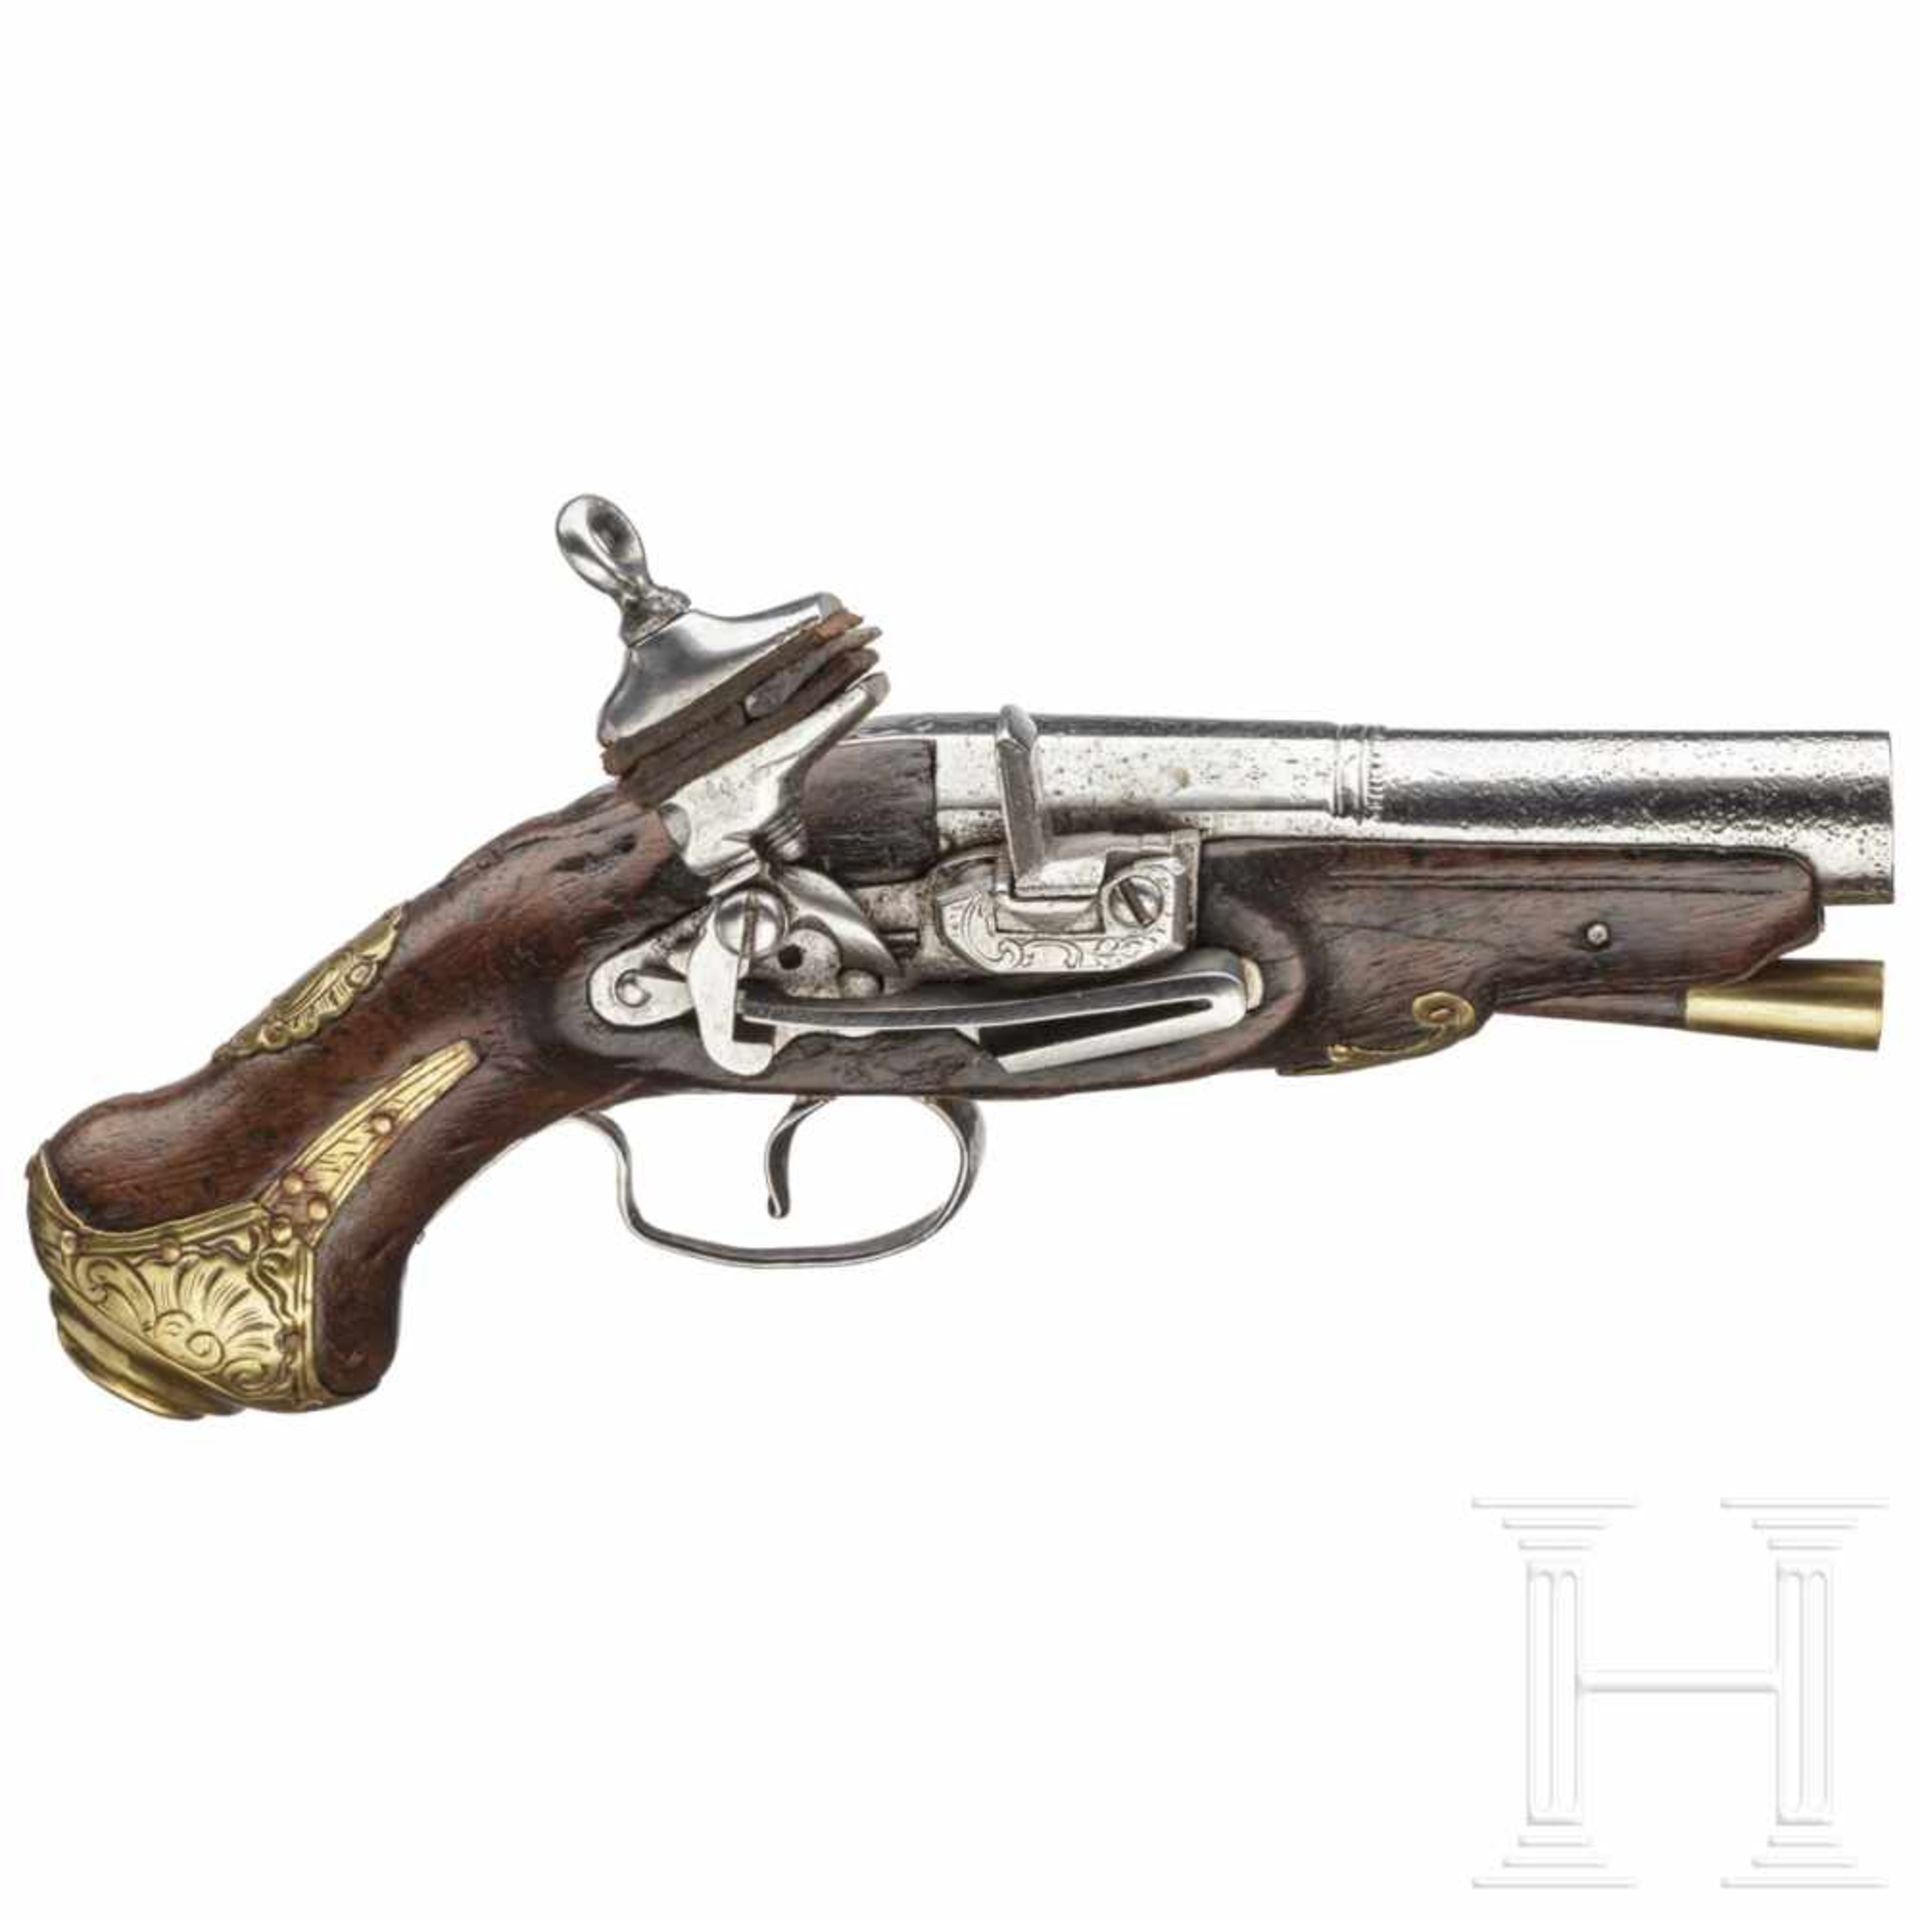 A Catalan Miquelet pocket pistol, circa 1780Oktagonaler, nach Baluster in rund übergehender Lauf